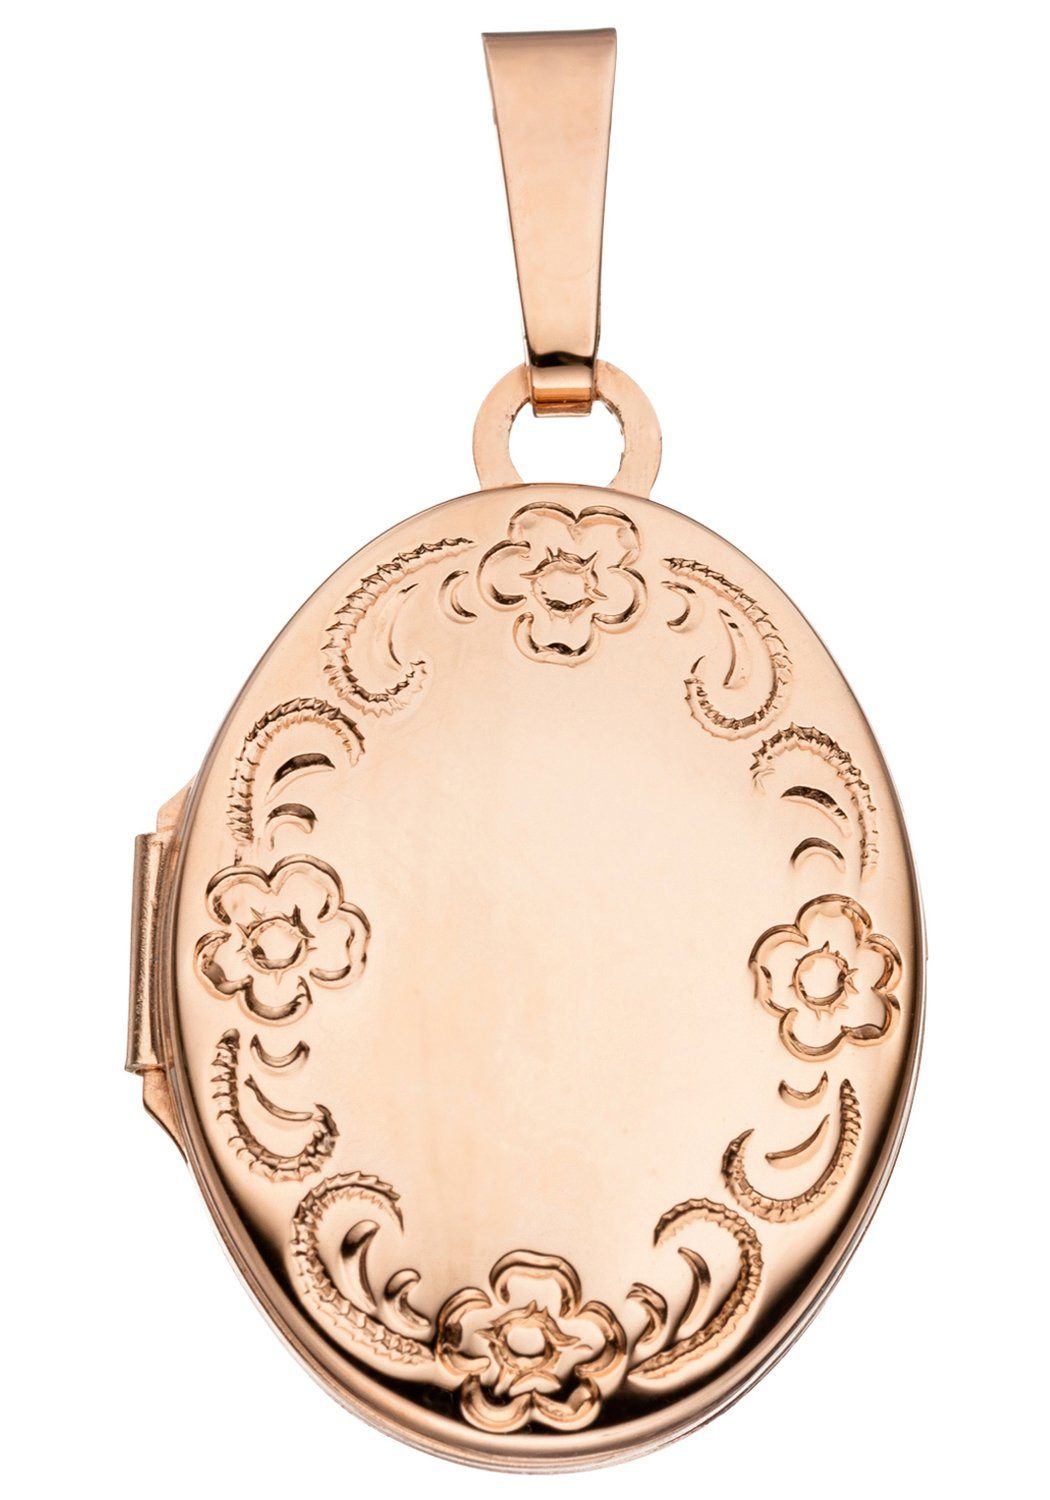 JOBO Medallionanhänger roségold Silber Anhänger 925 Medaillon oval, vergoldet